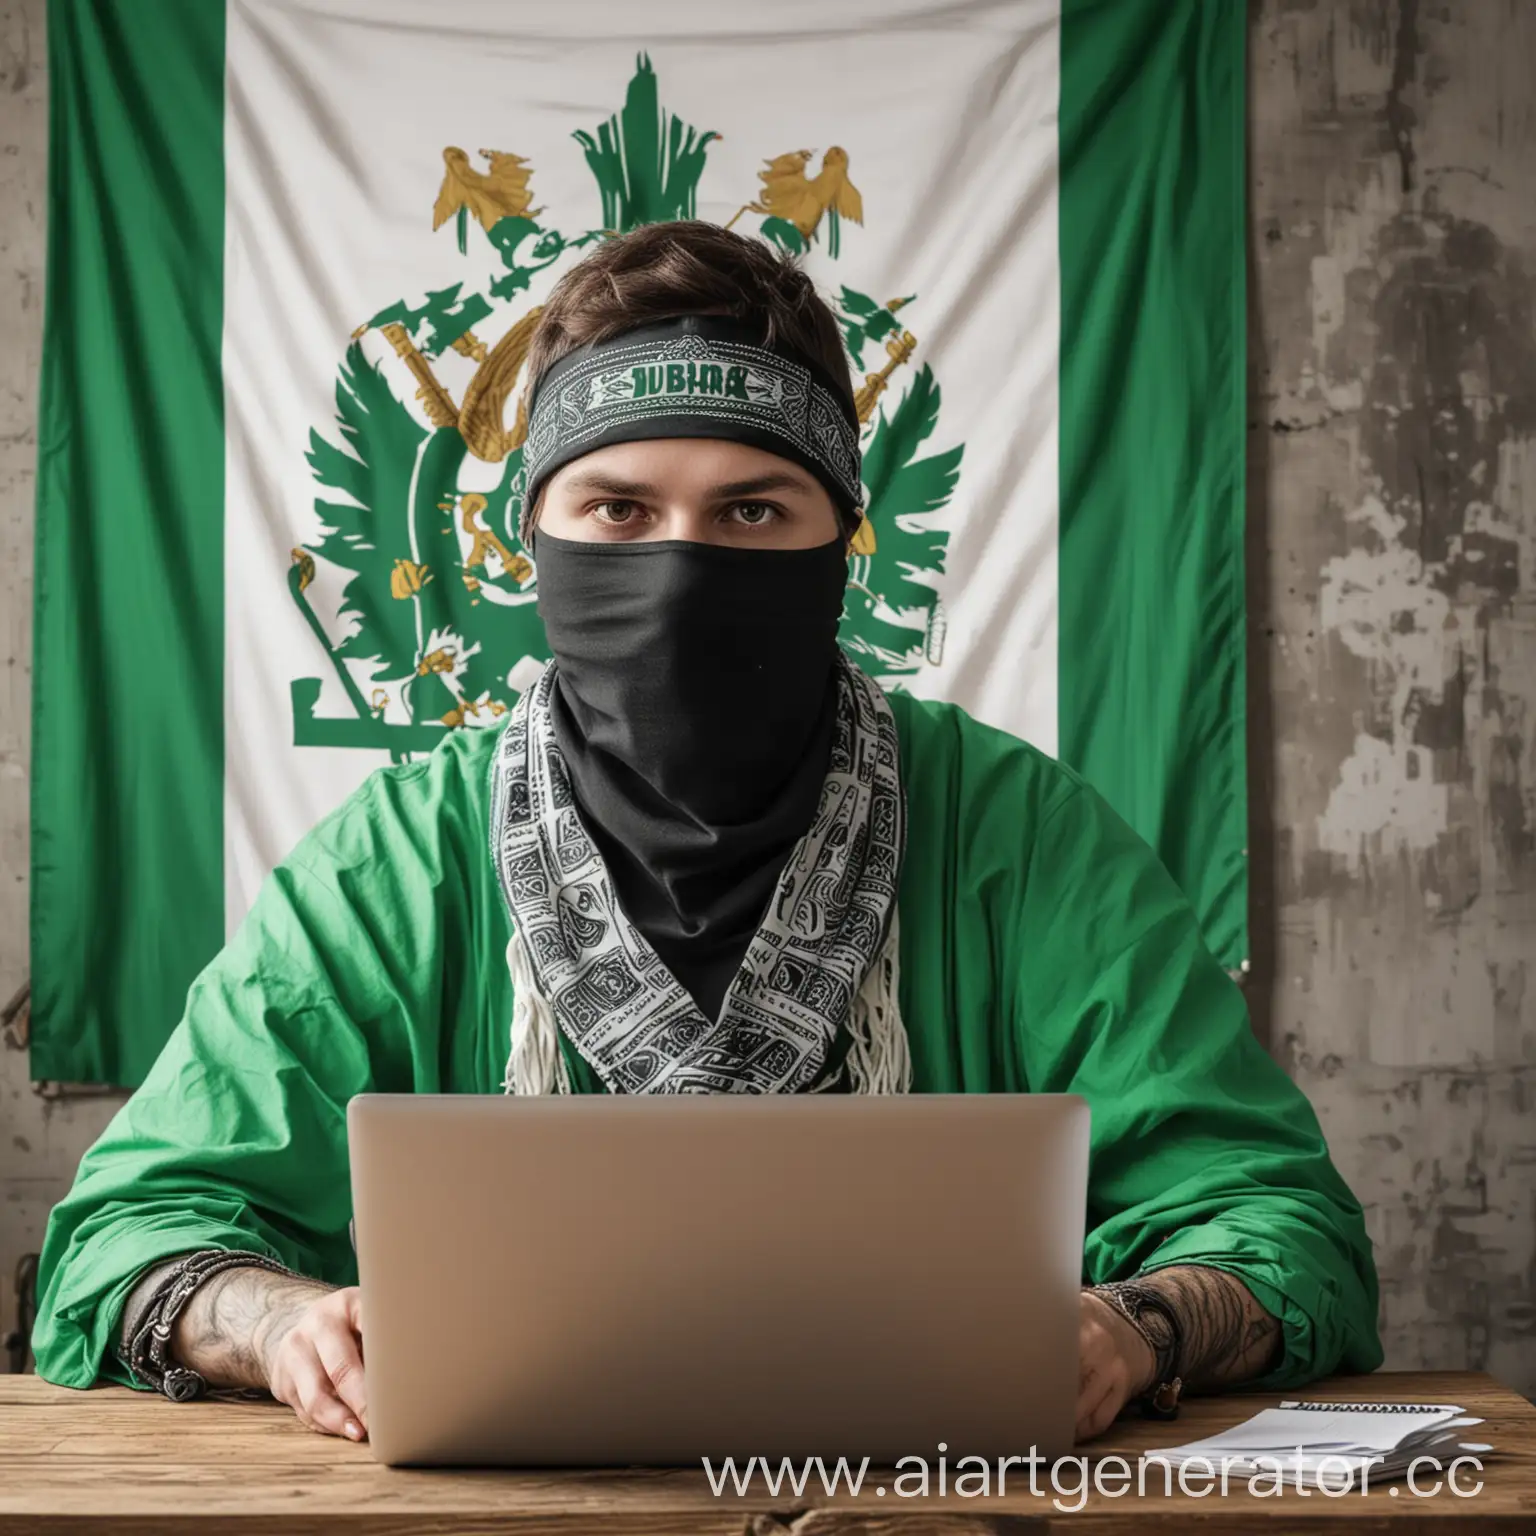 Хакер в бандане сидящий за ноутбуком а на стене у него бело-зеленый флаг Сибири